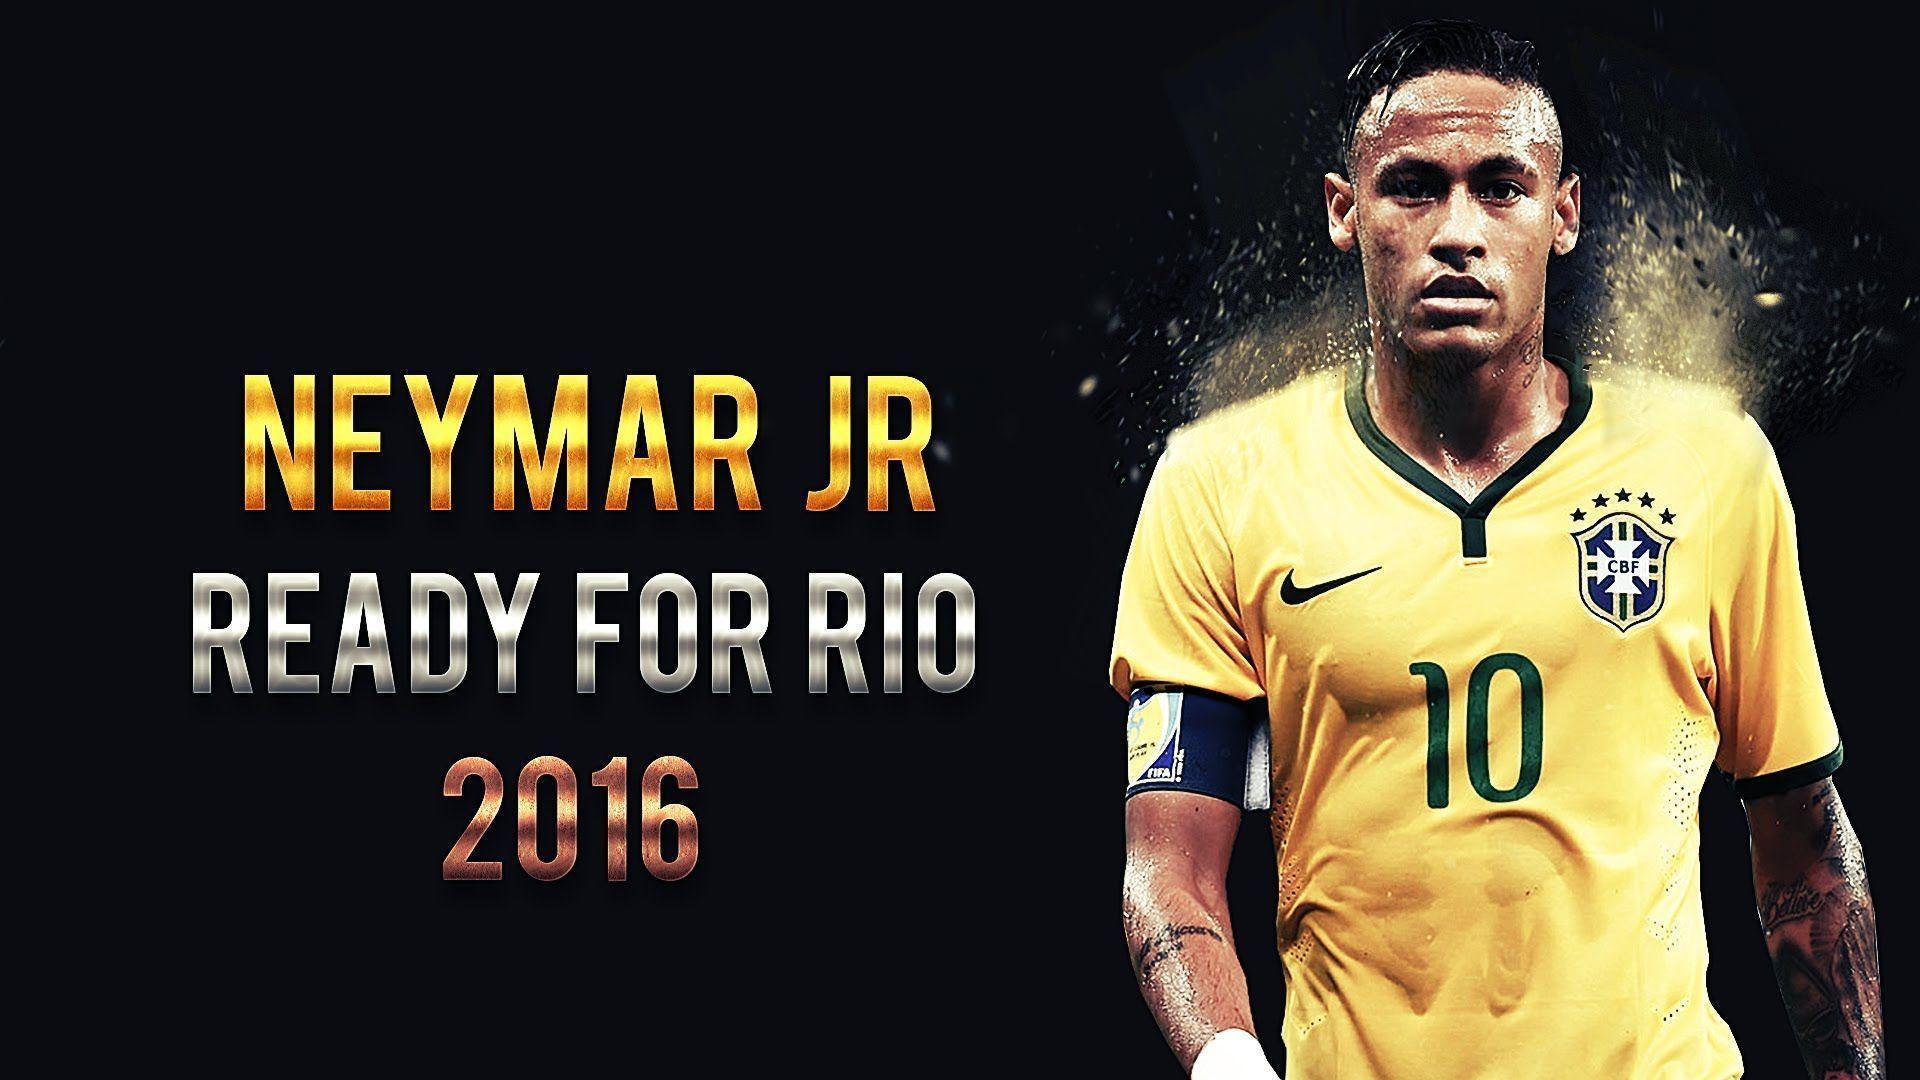 Neymar Jr For Rio. Skills, Goals, Dribbles. Brazil